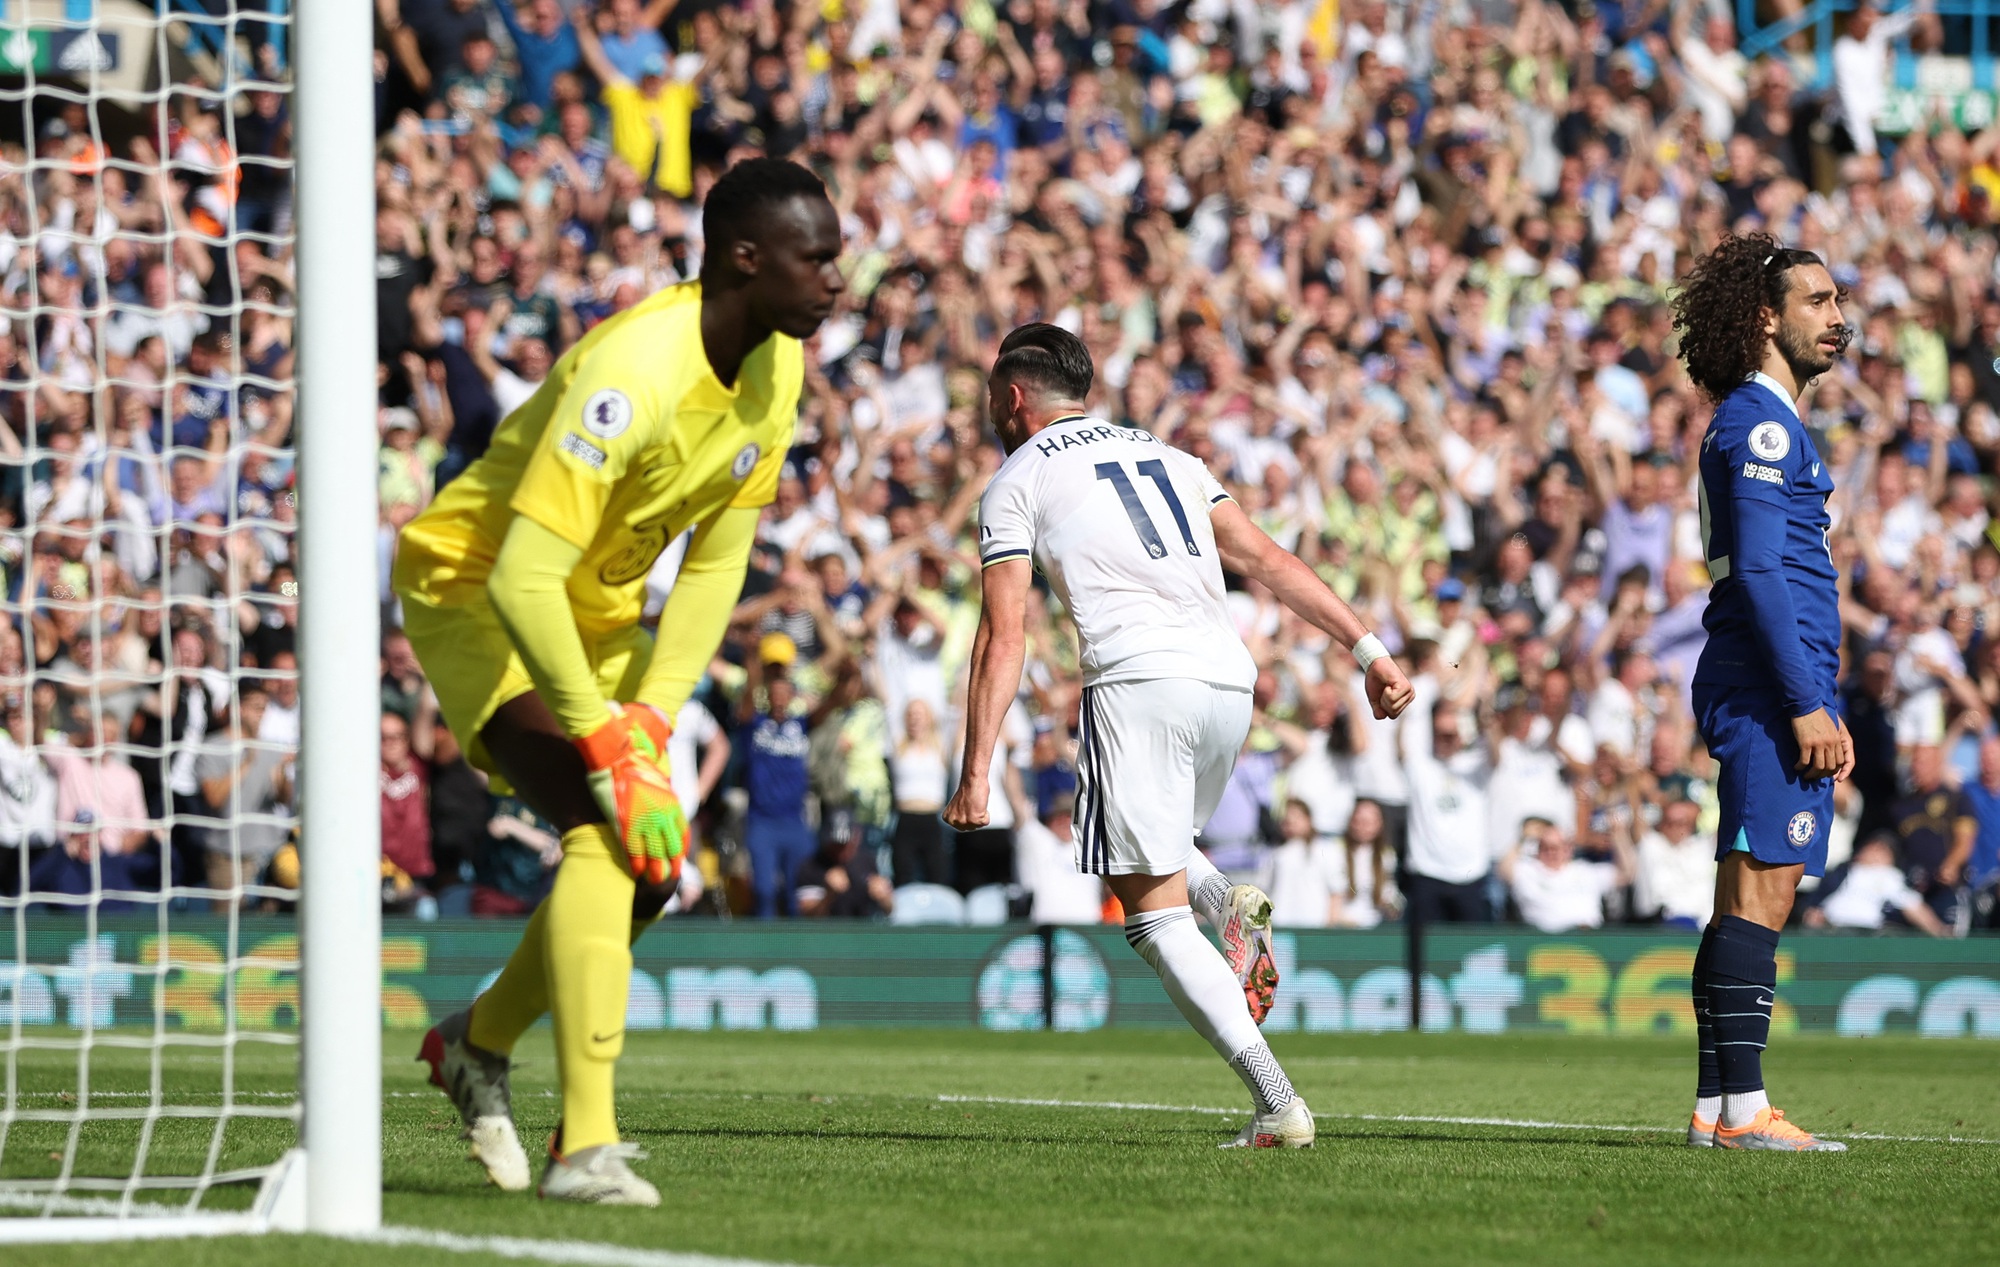 Thua sốc 0-3 Leeds United, Chelsea trượt dài bảng xếp hạng - Ảnh 6.